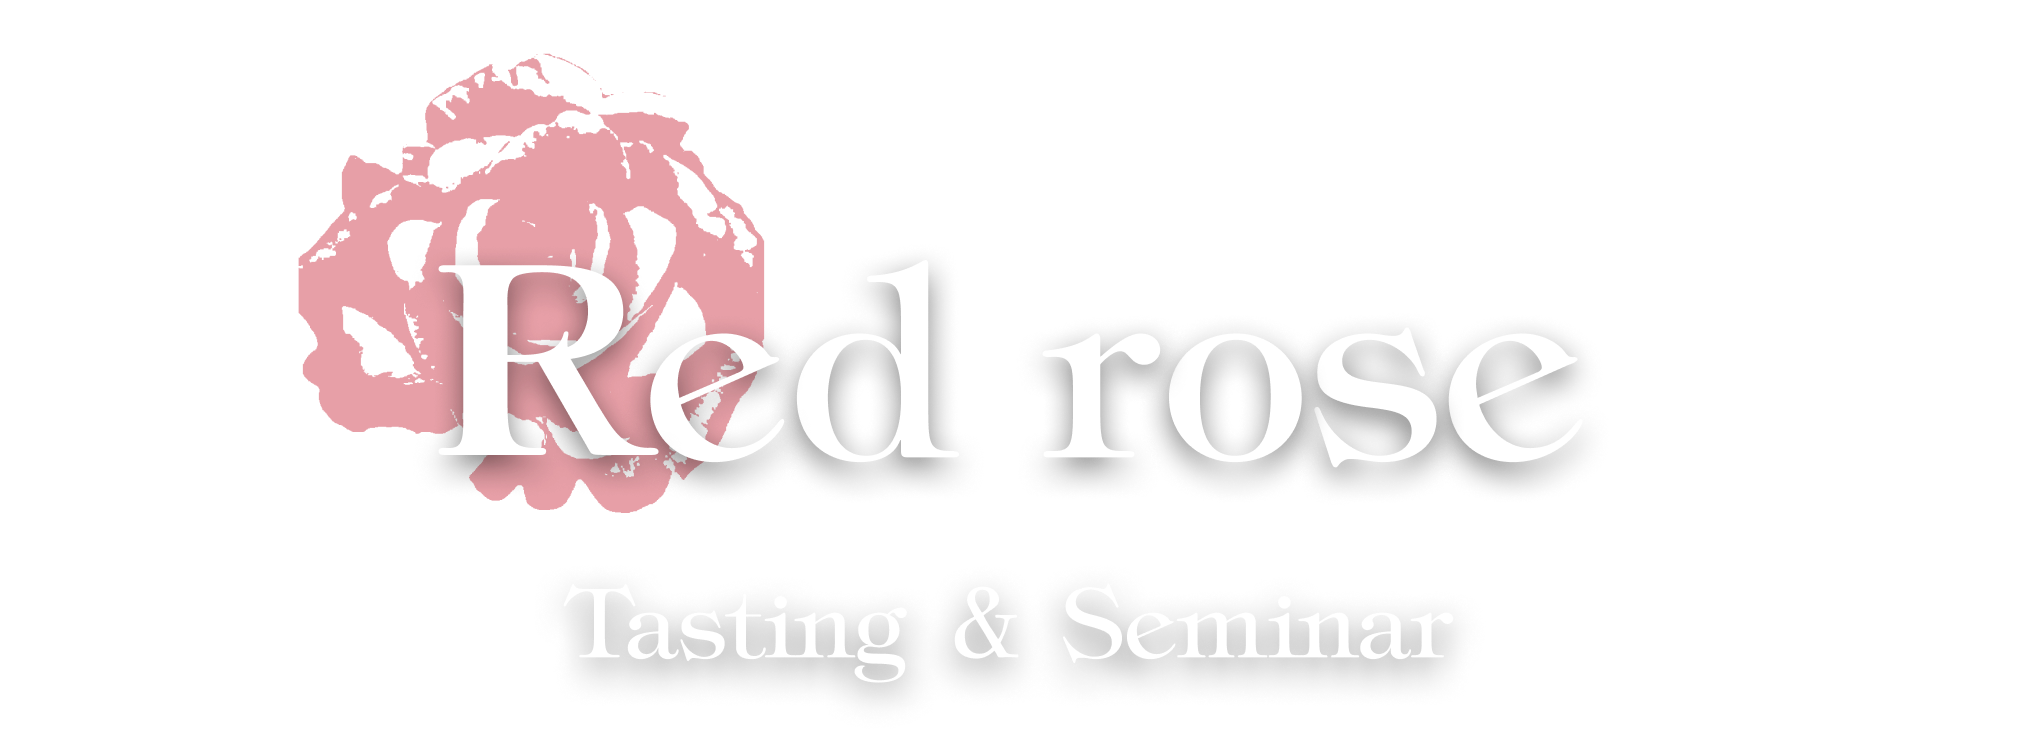 Red rose Whisky Seminar